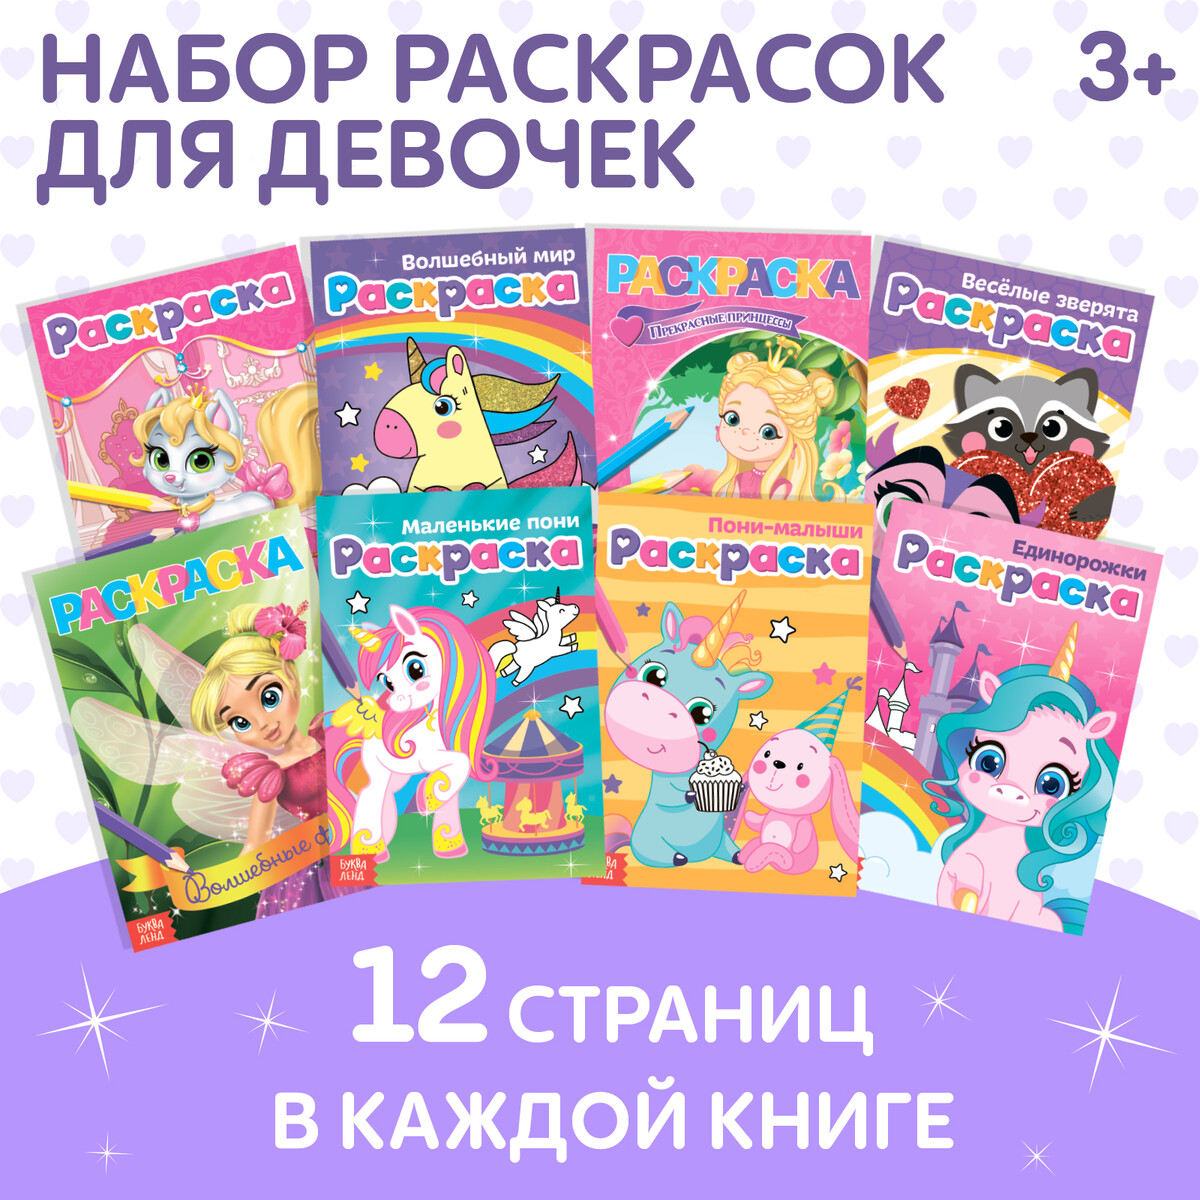 Раскраски для девочек набор комплект развивашка алфавит прописи для девочек комплект из 4 х книг